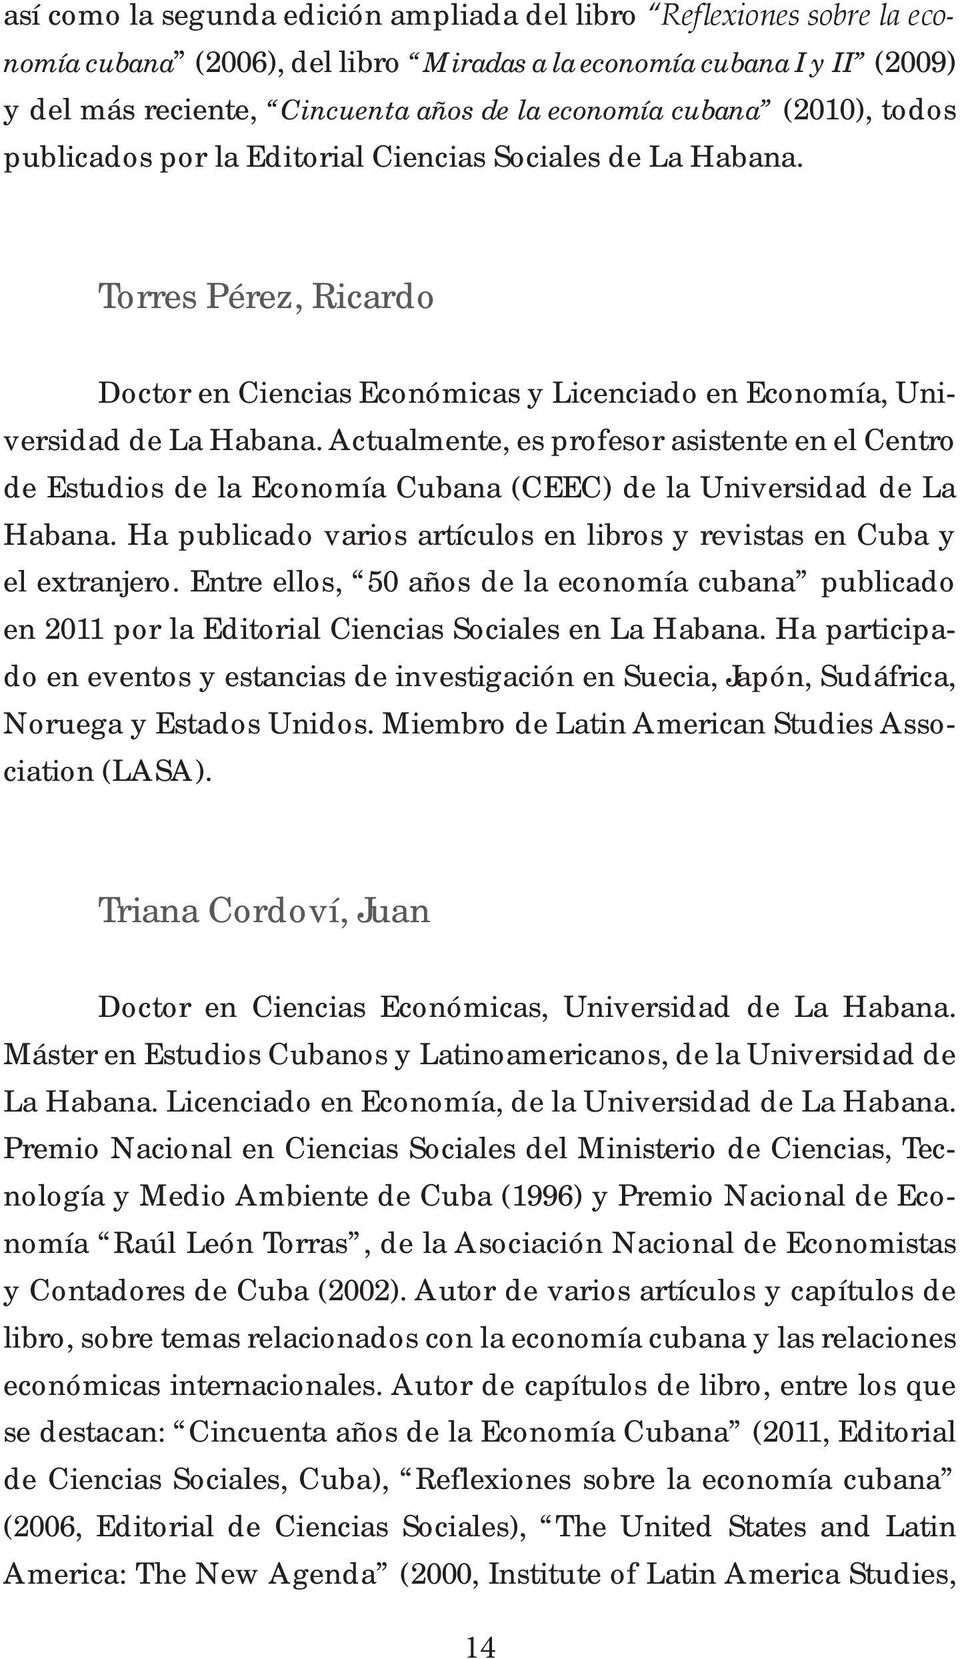 Actualmente, es profesor asistente en el Centro de Estudios de la Economía Cubana (CEEC) de la Universidad de La Habana. Ha publicado varios artículos en libros y revistas en Cuba y el extranjero.